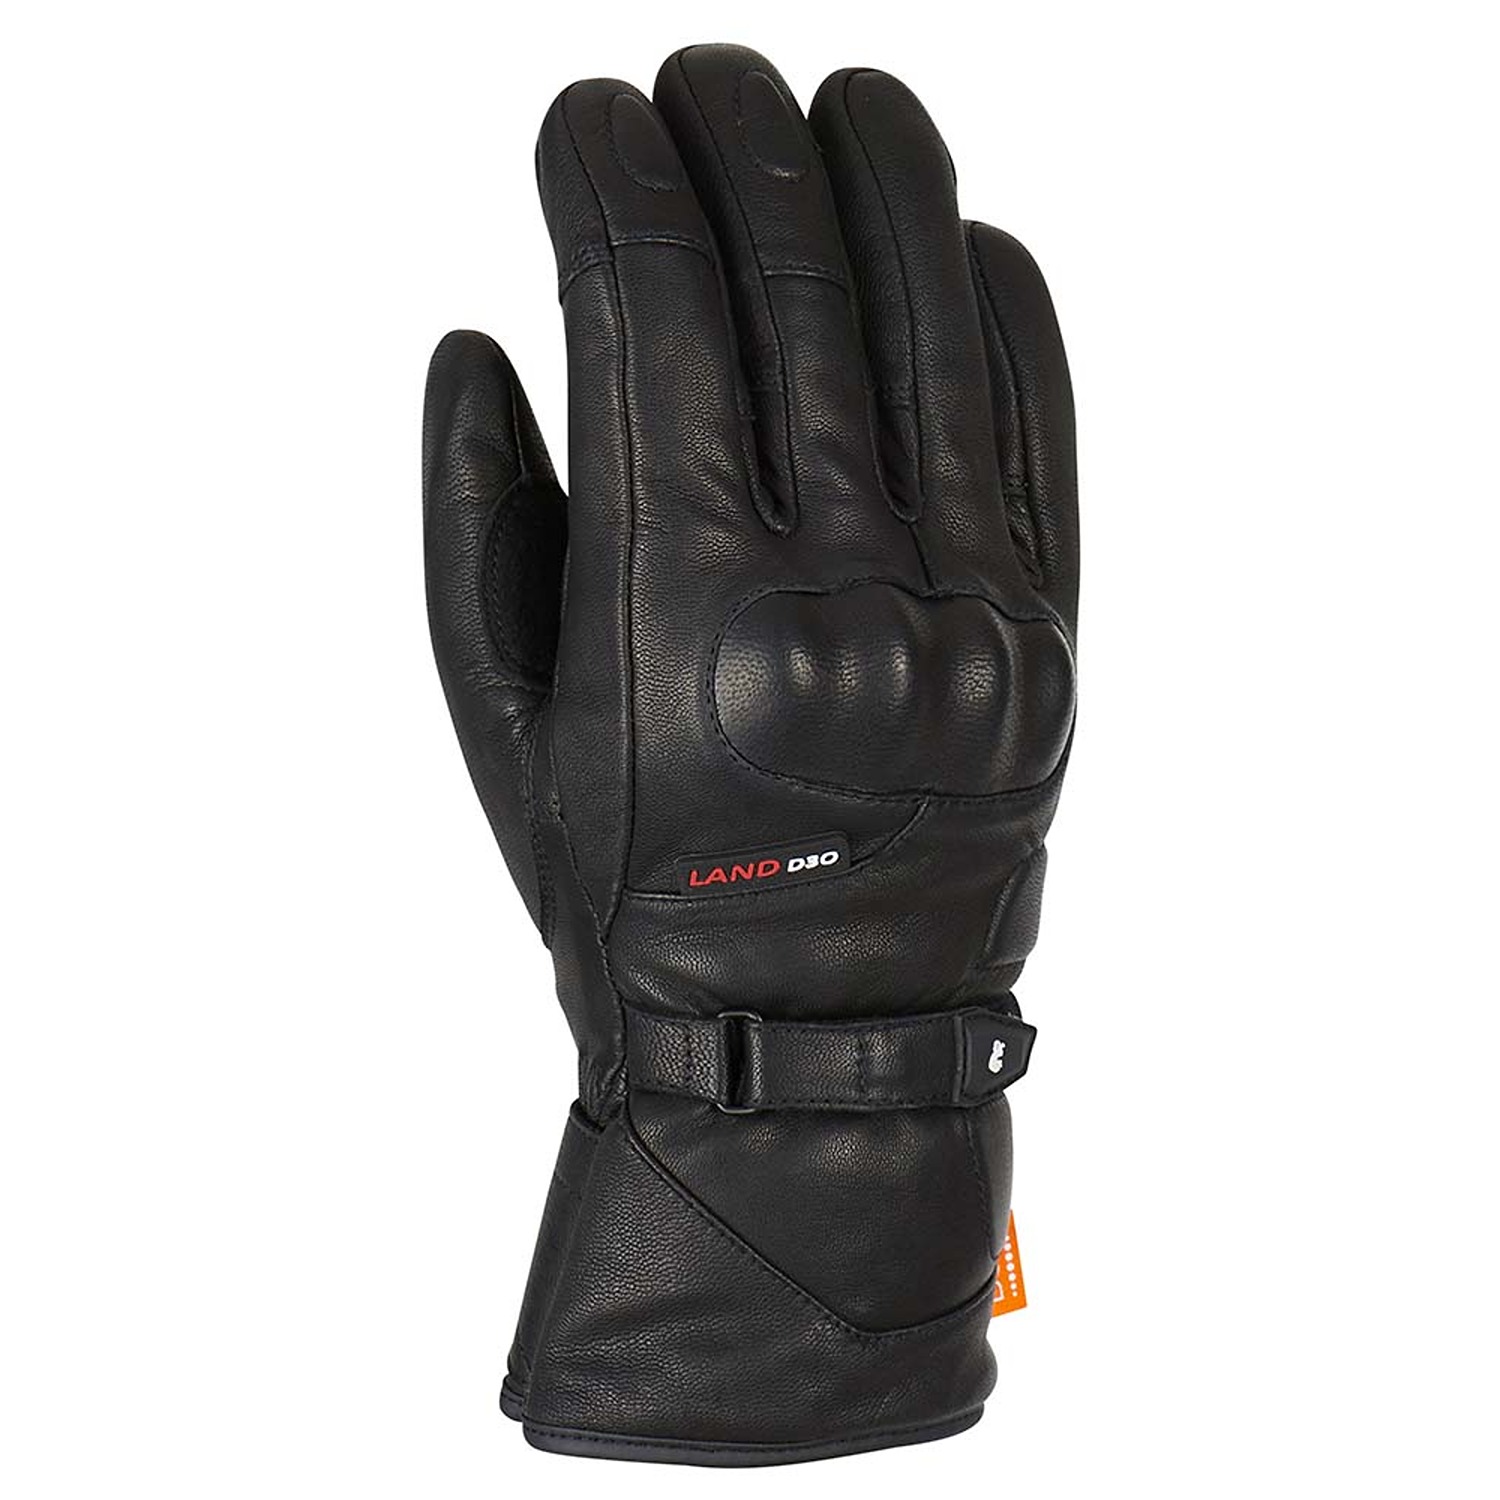 Image of Furygan Land DK D30 Gloves Black Größe S